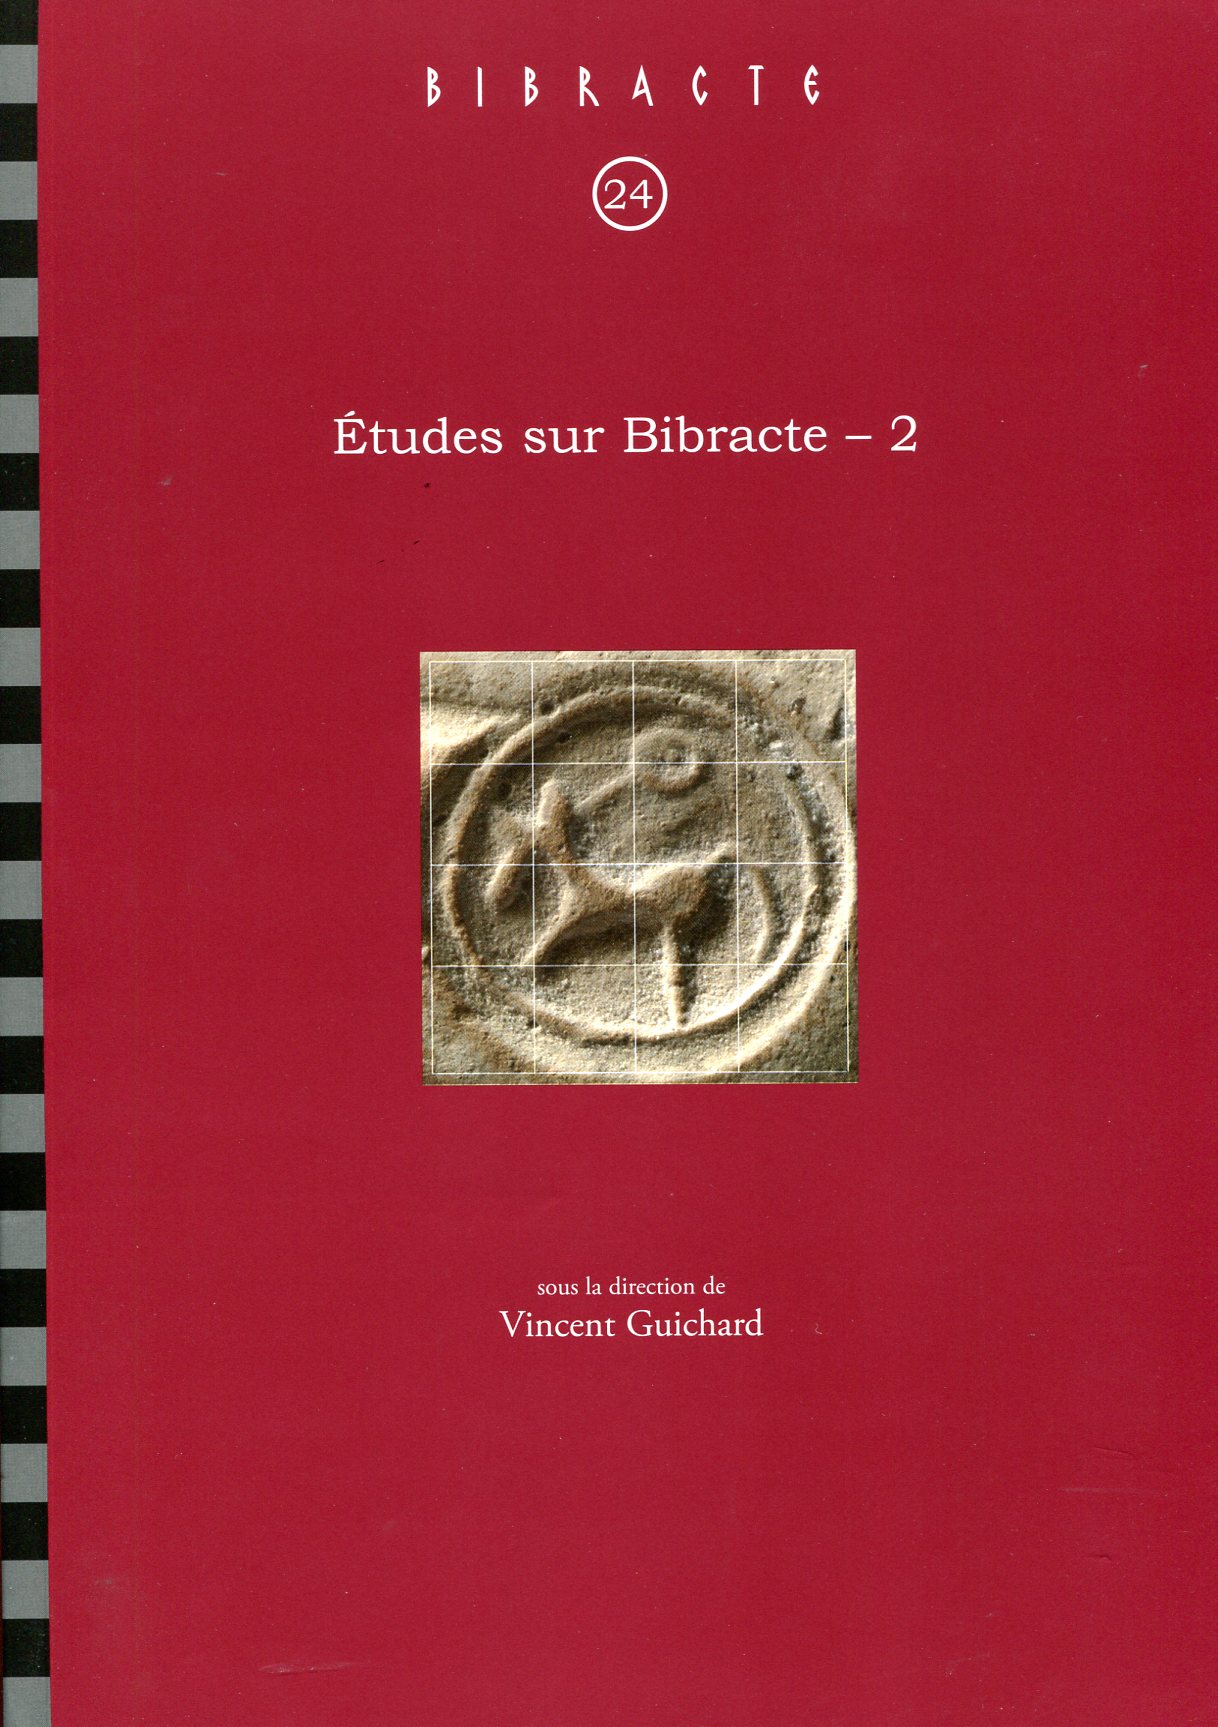 Études sur Bibracte, 2, (Bibracte, 24), 2014, 380 p.